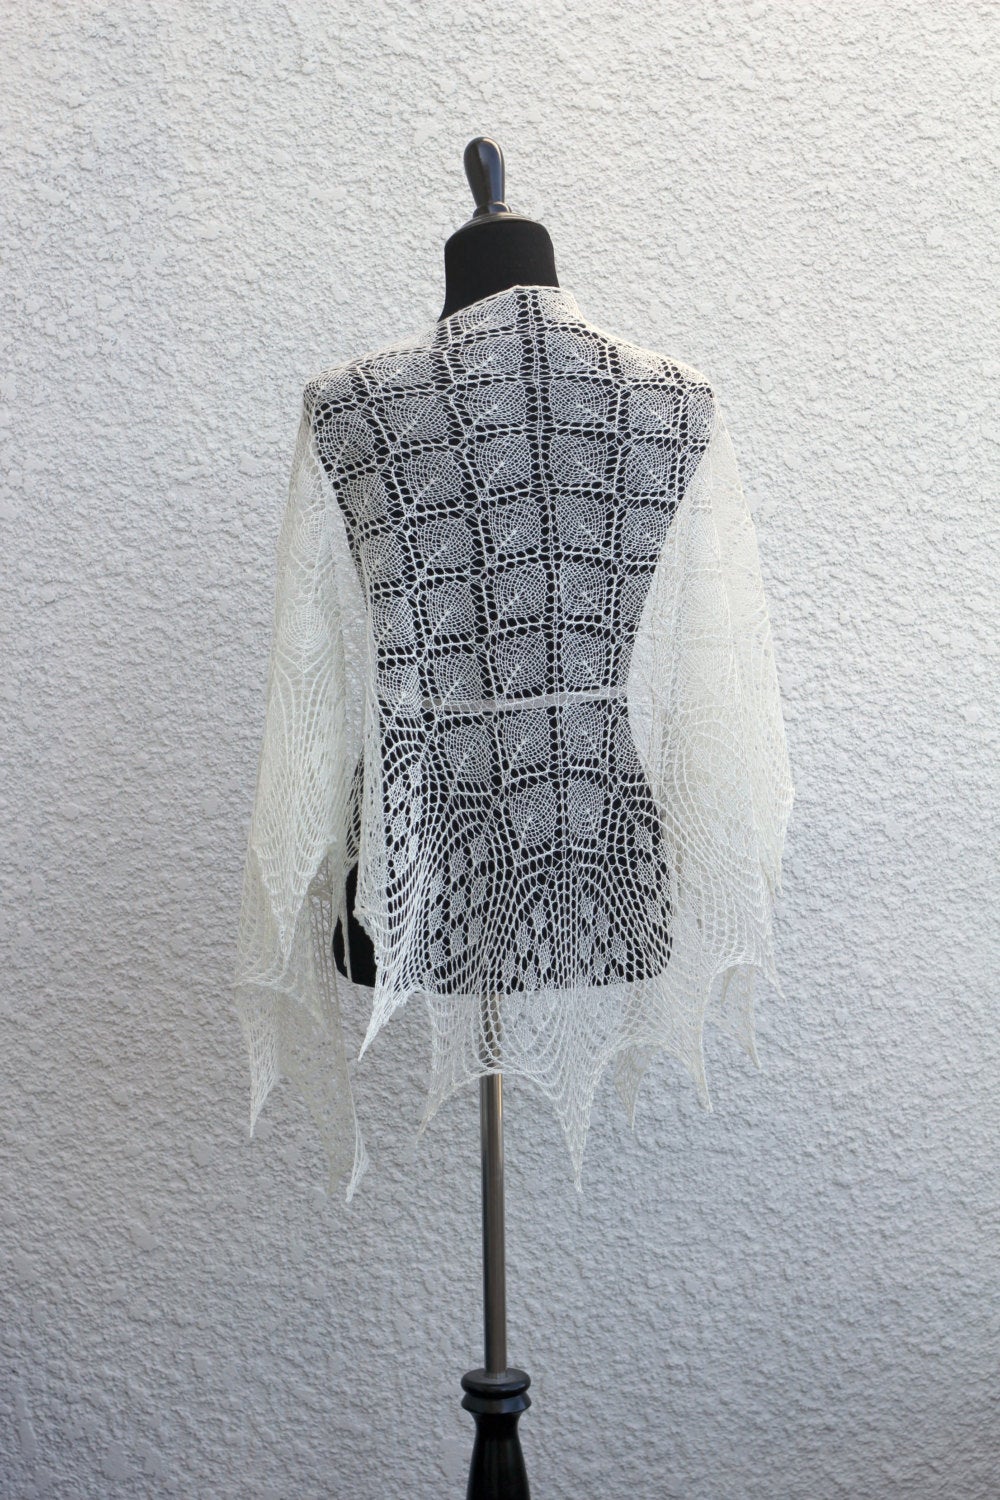 Knit lace shawl, wedding shawl, bridal shawl, gift for her